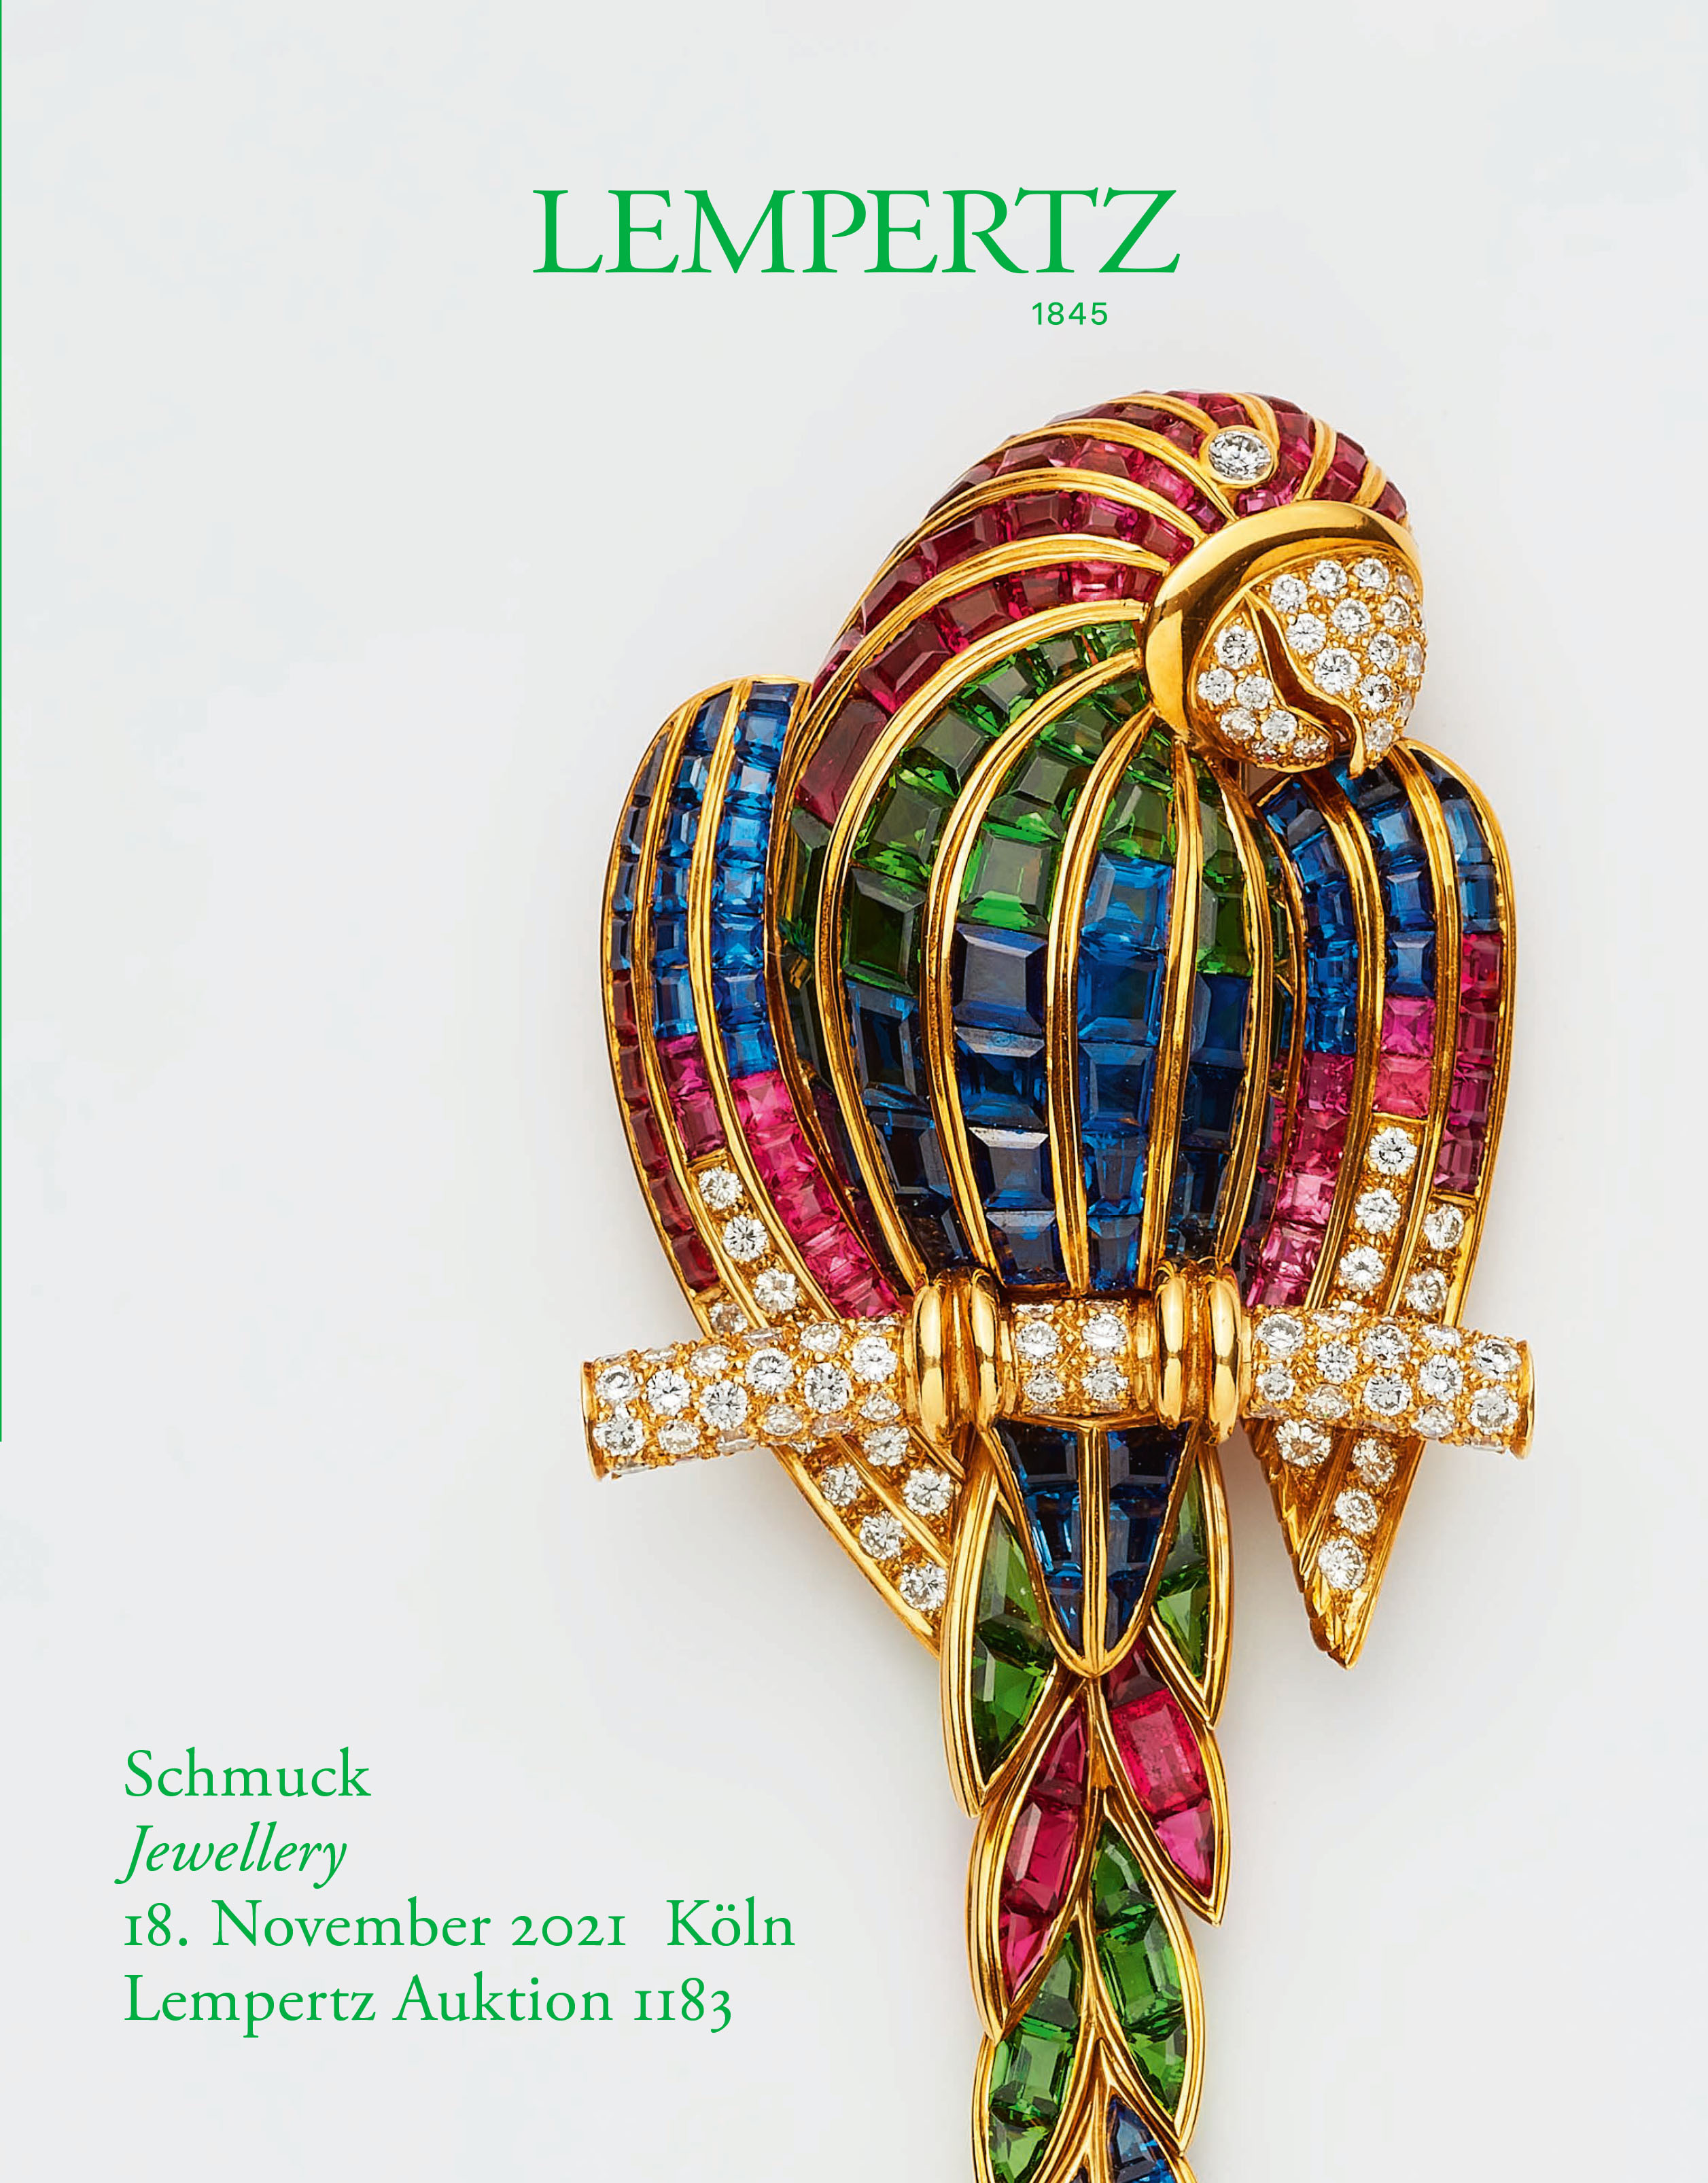 Auktionskatalog - Schmuck - Online Katalog - Auktion 1183 – Ersteigern Sie hochwertige Kunst in der nächsten Lempertz-Auktion!